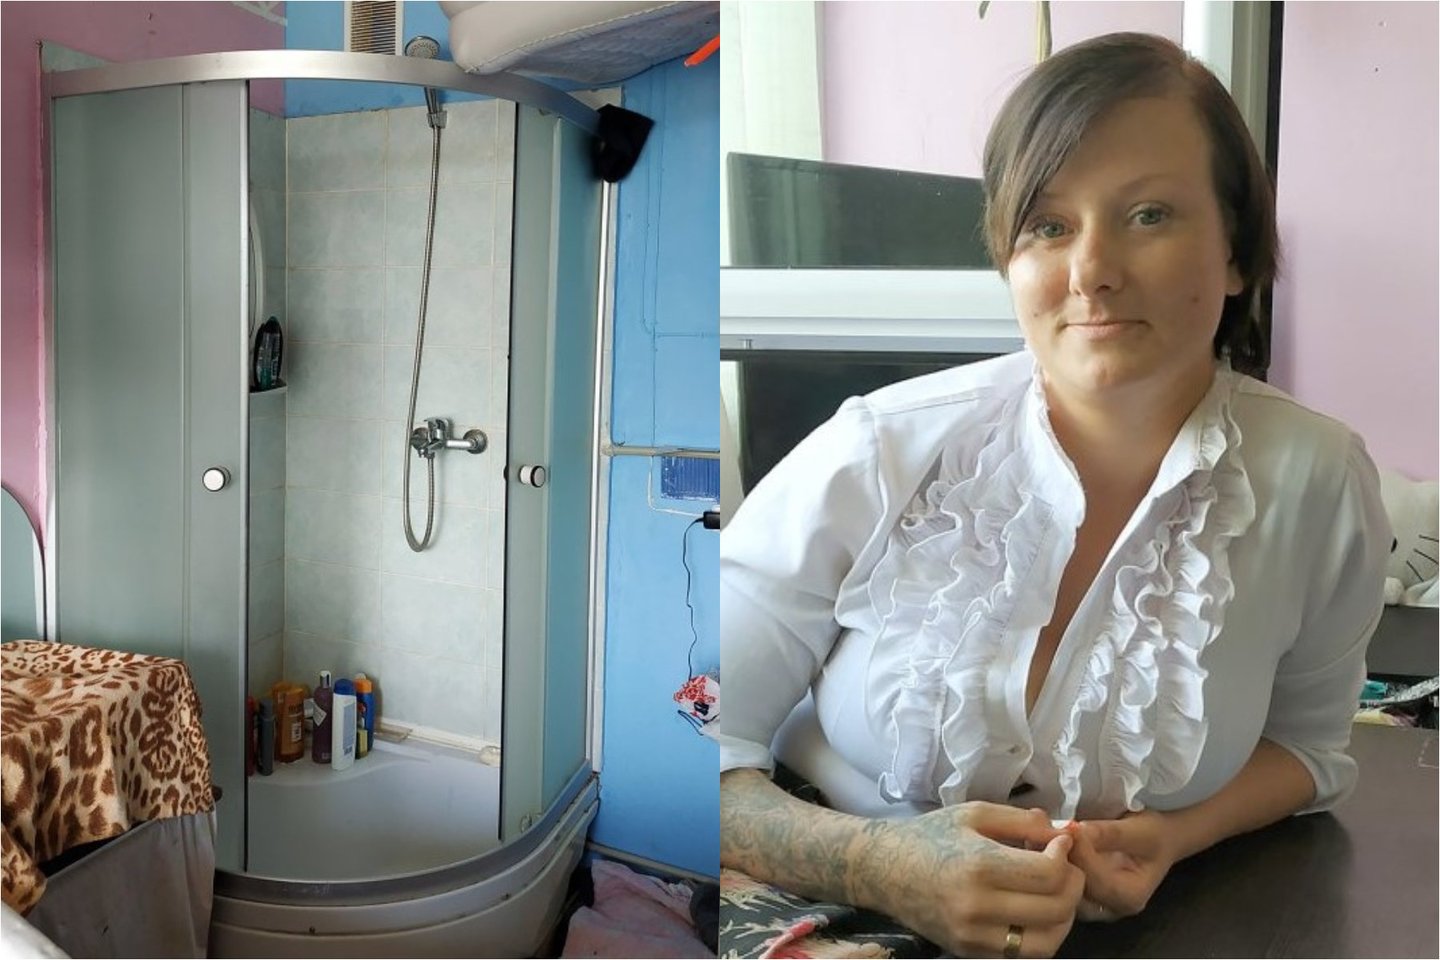  Pasvalio r. 4 vaikų mama glaudžiasi 34 kv. m būste, dušą teko įrengti svetainėje.<br> lrytas.lt koliažas